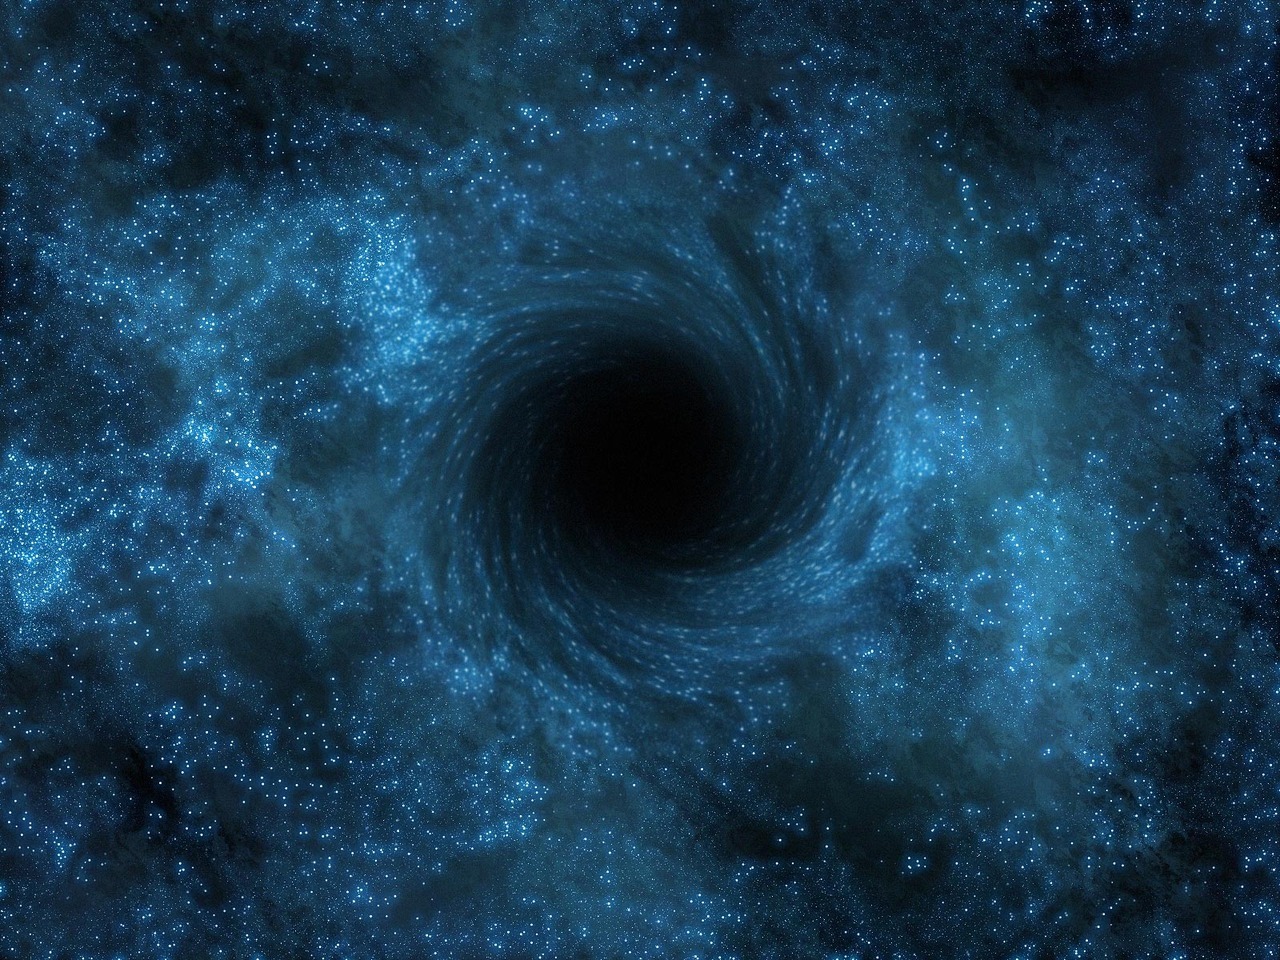 Stephen Hawking a une nouvelle définition bien différente des trous noirs qui ne le seraient pas vraiment